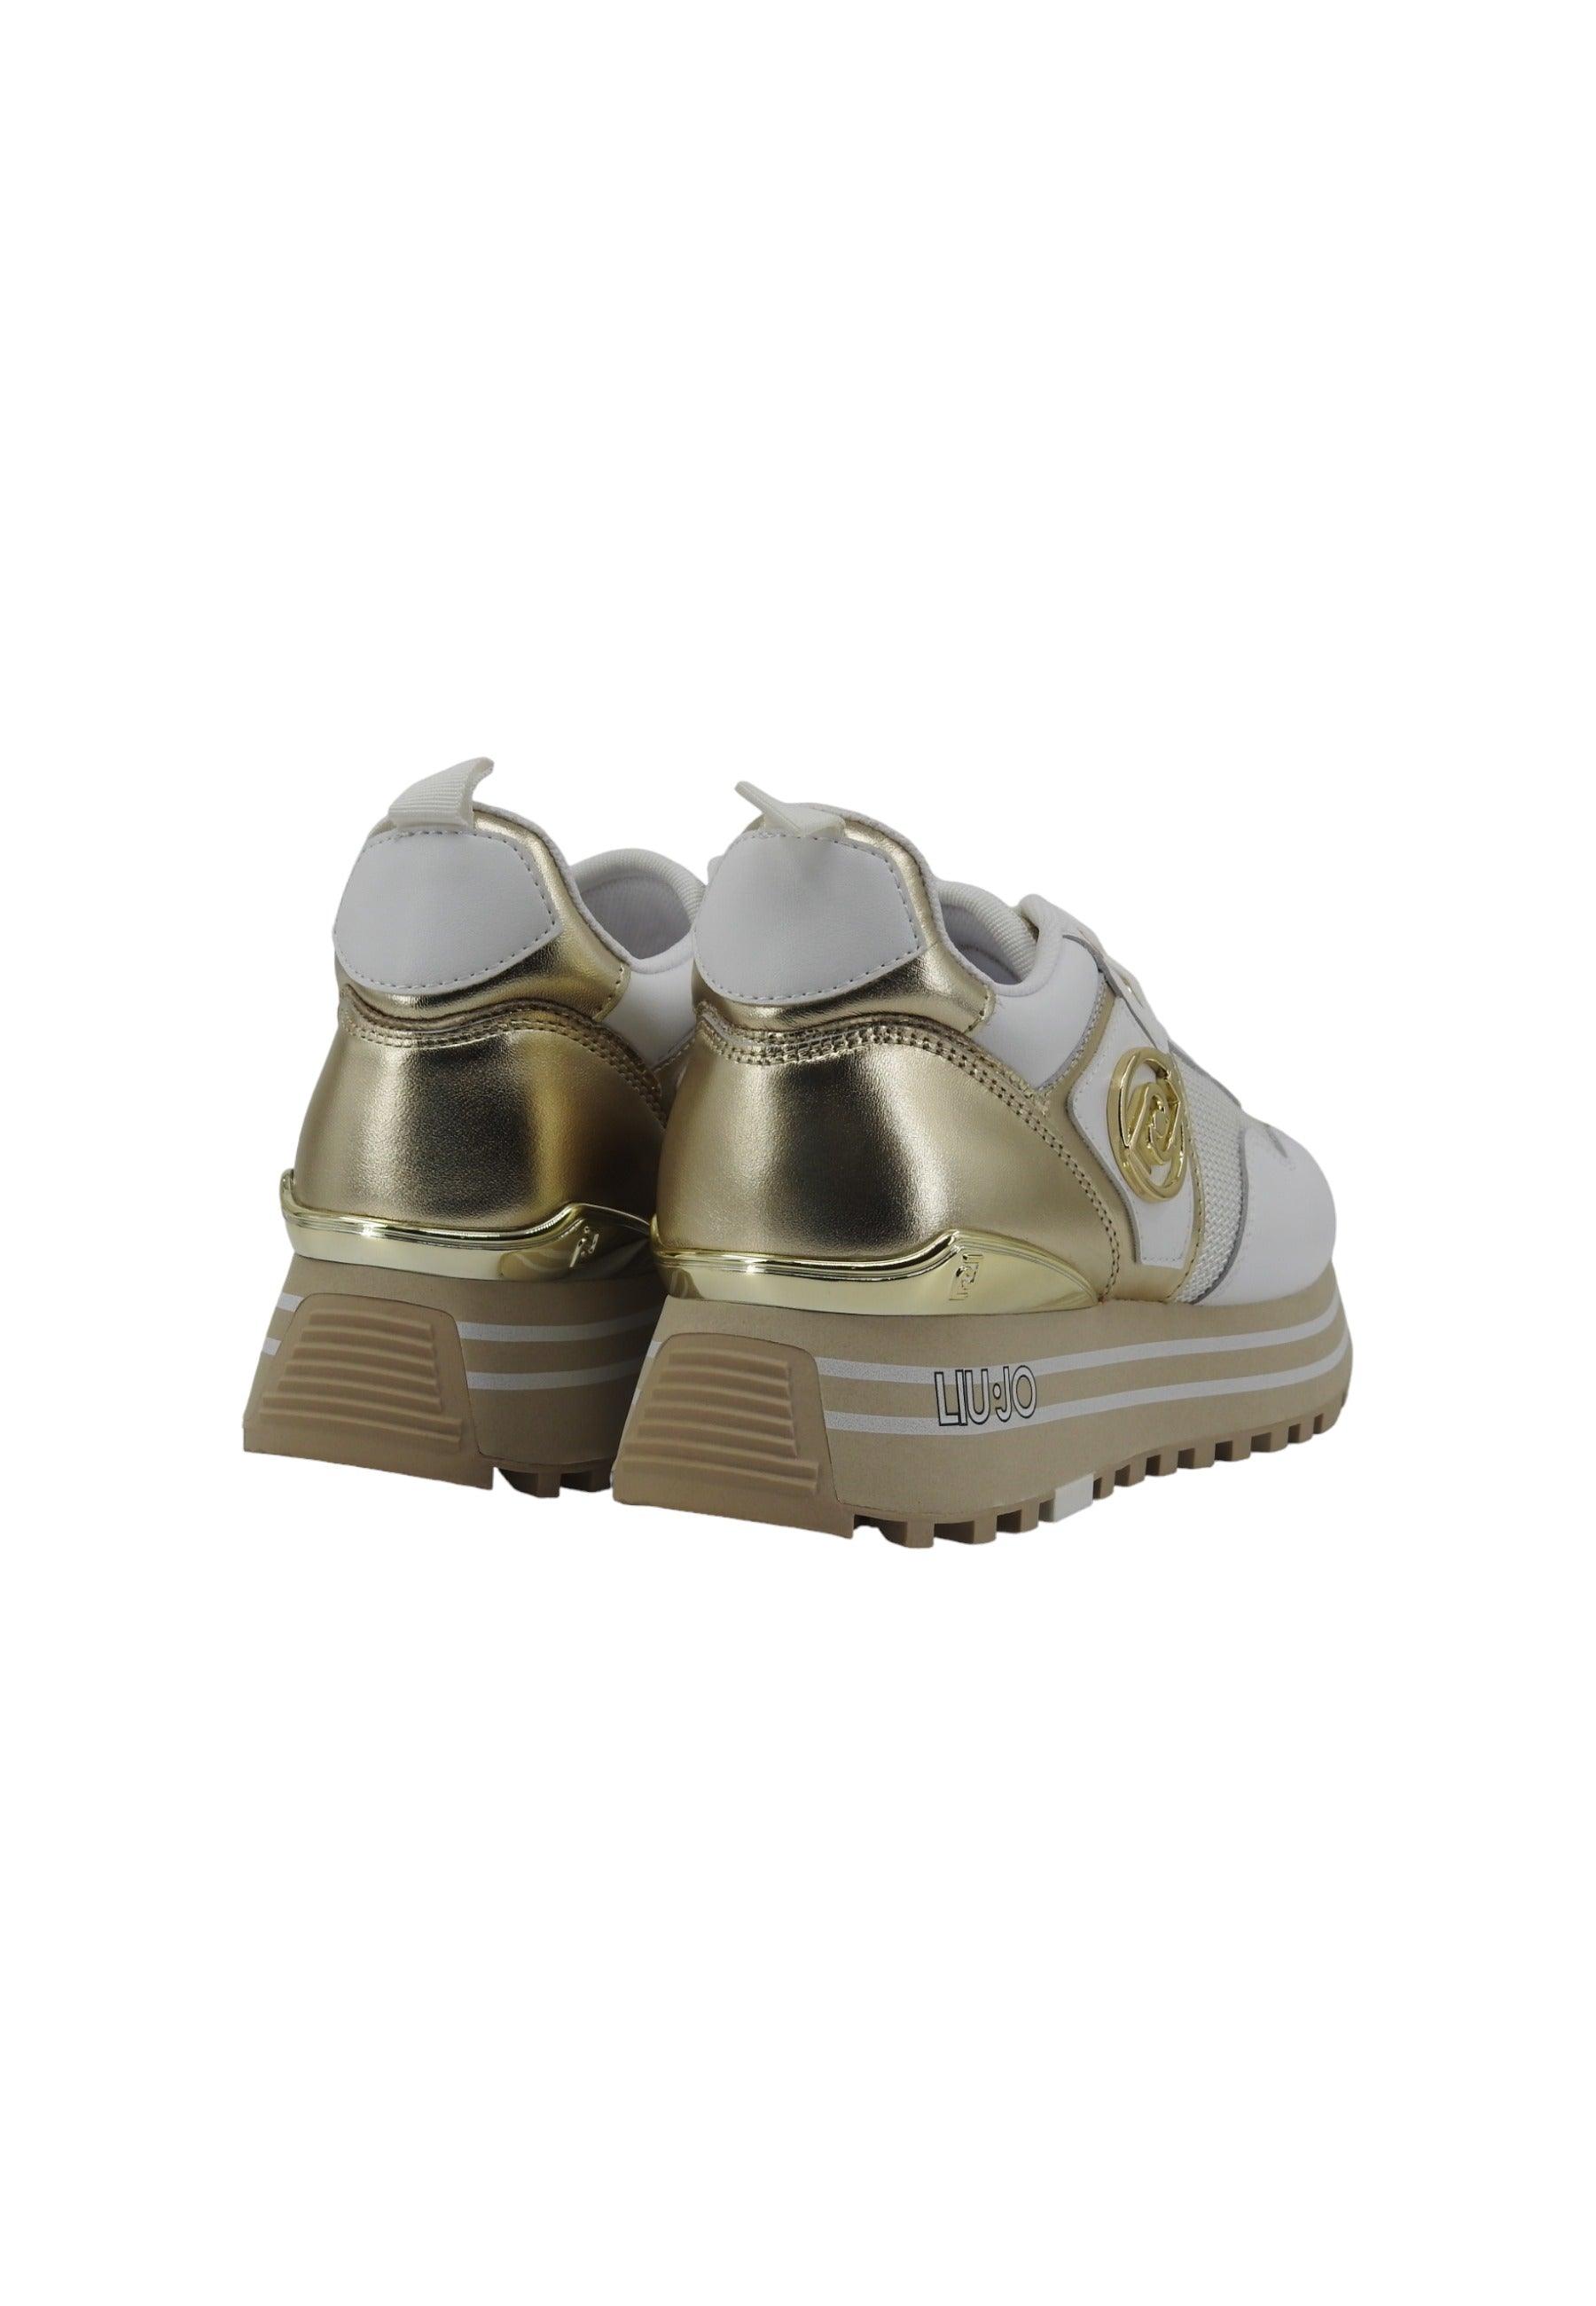 LIU JO Maxi Wonder 10 Sneaker Donna White BA4053PX030 - Sandrini Calzature e Abbigliamento